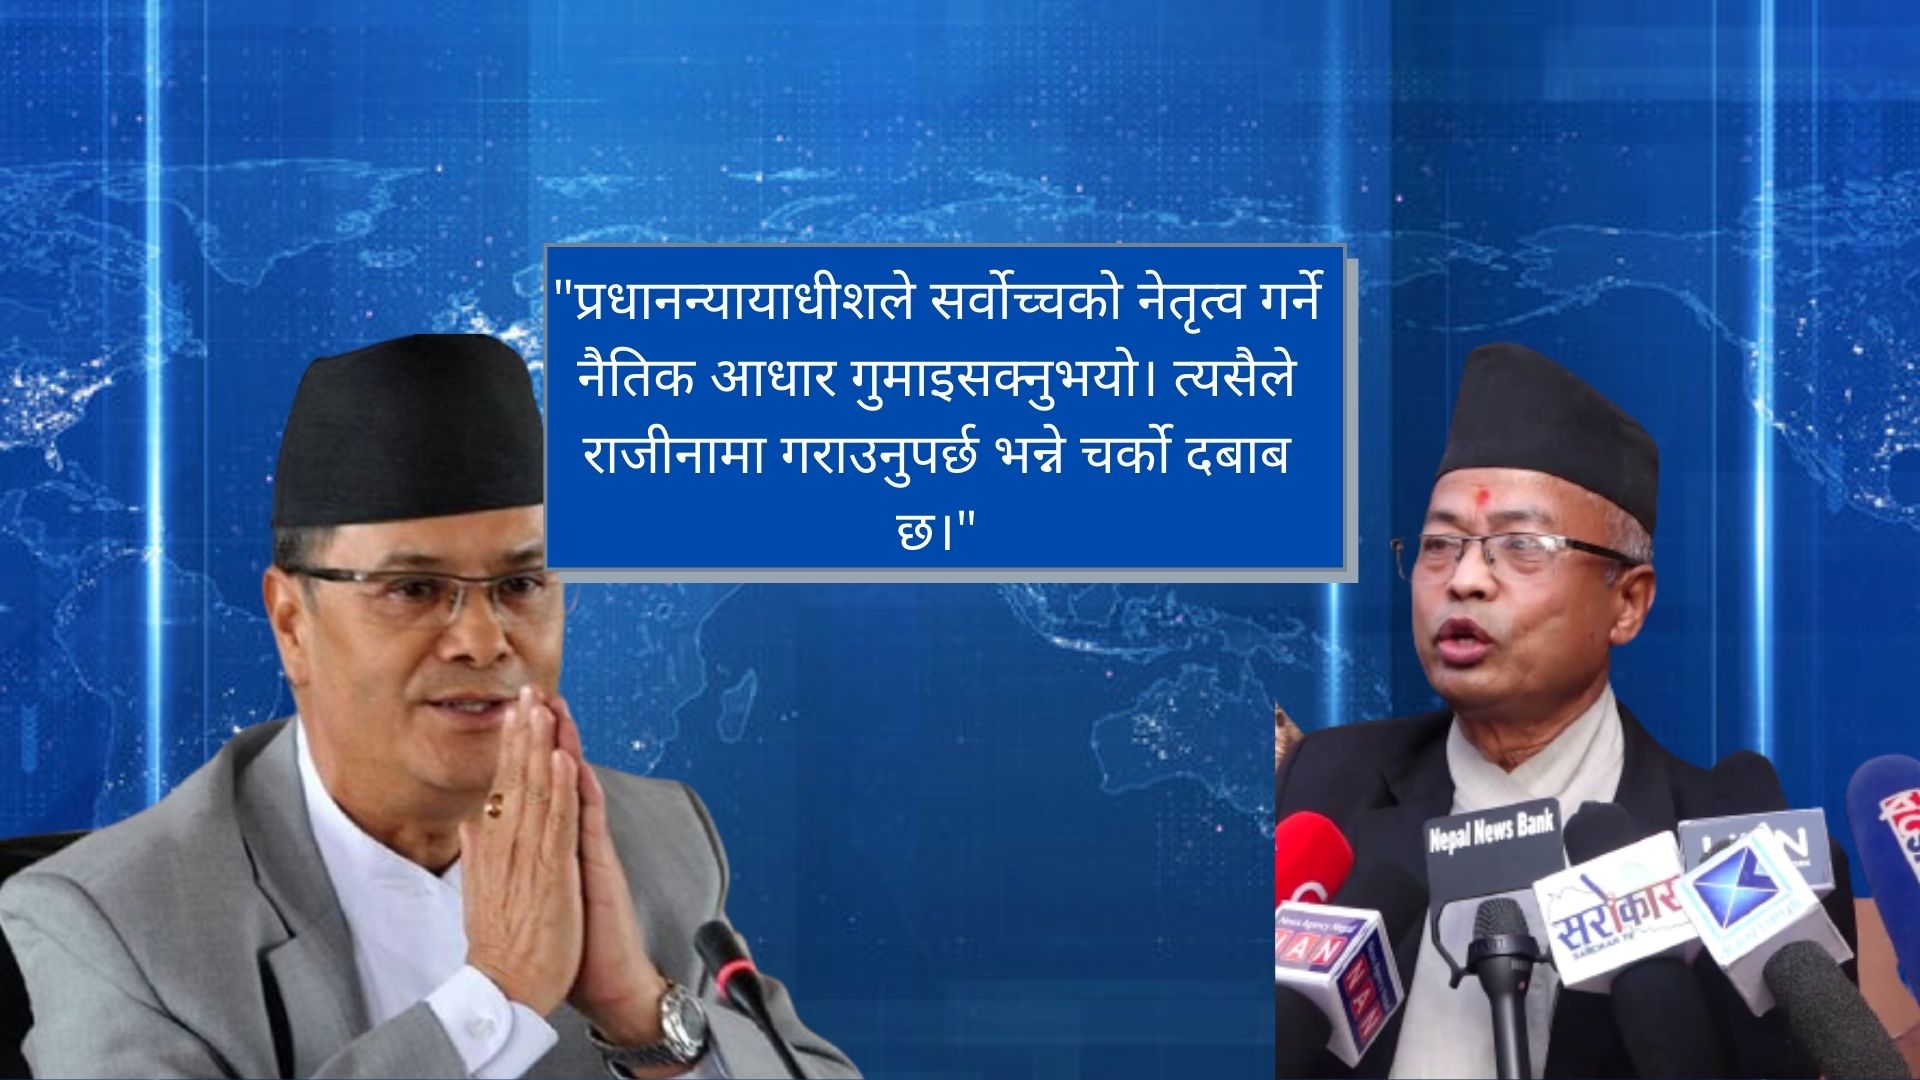 नेपाल बारले भन्यो: 'प्रधानन्यायाधीशले सर्वोच्चको नेतृत्व गर्ने नैतिक आधार गुमाइसके'